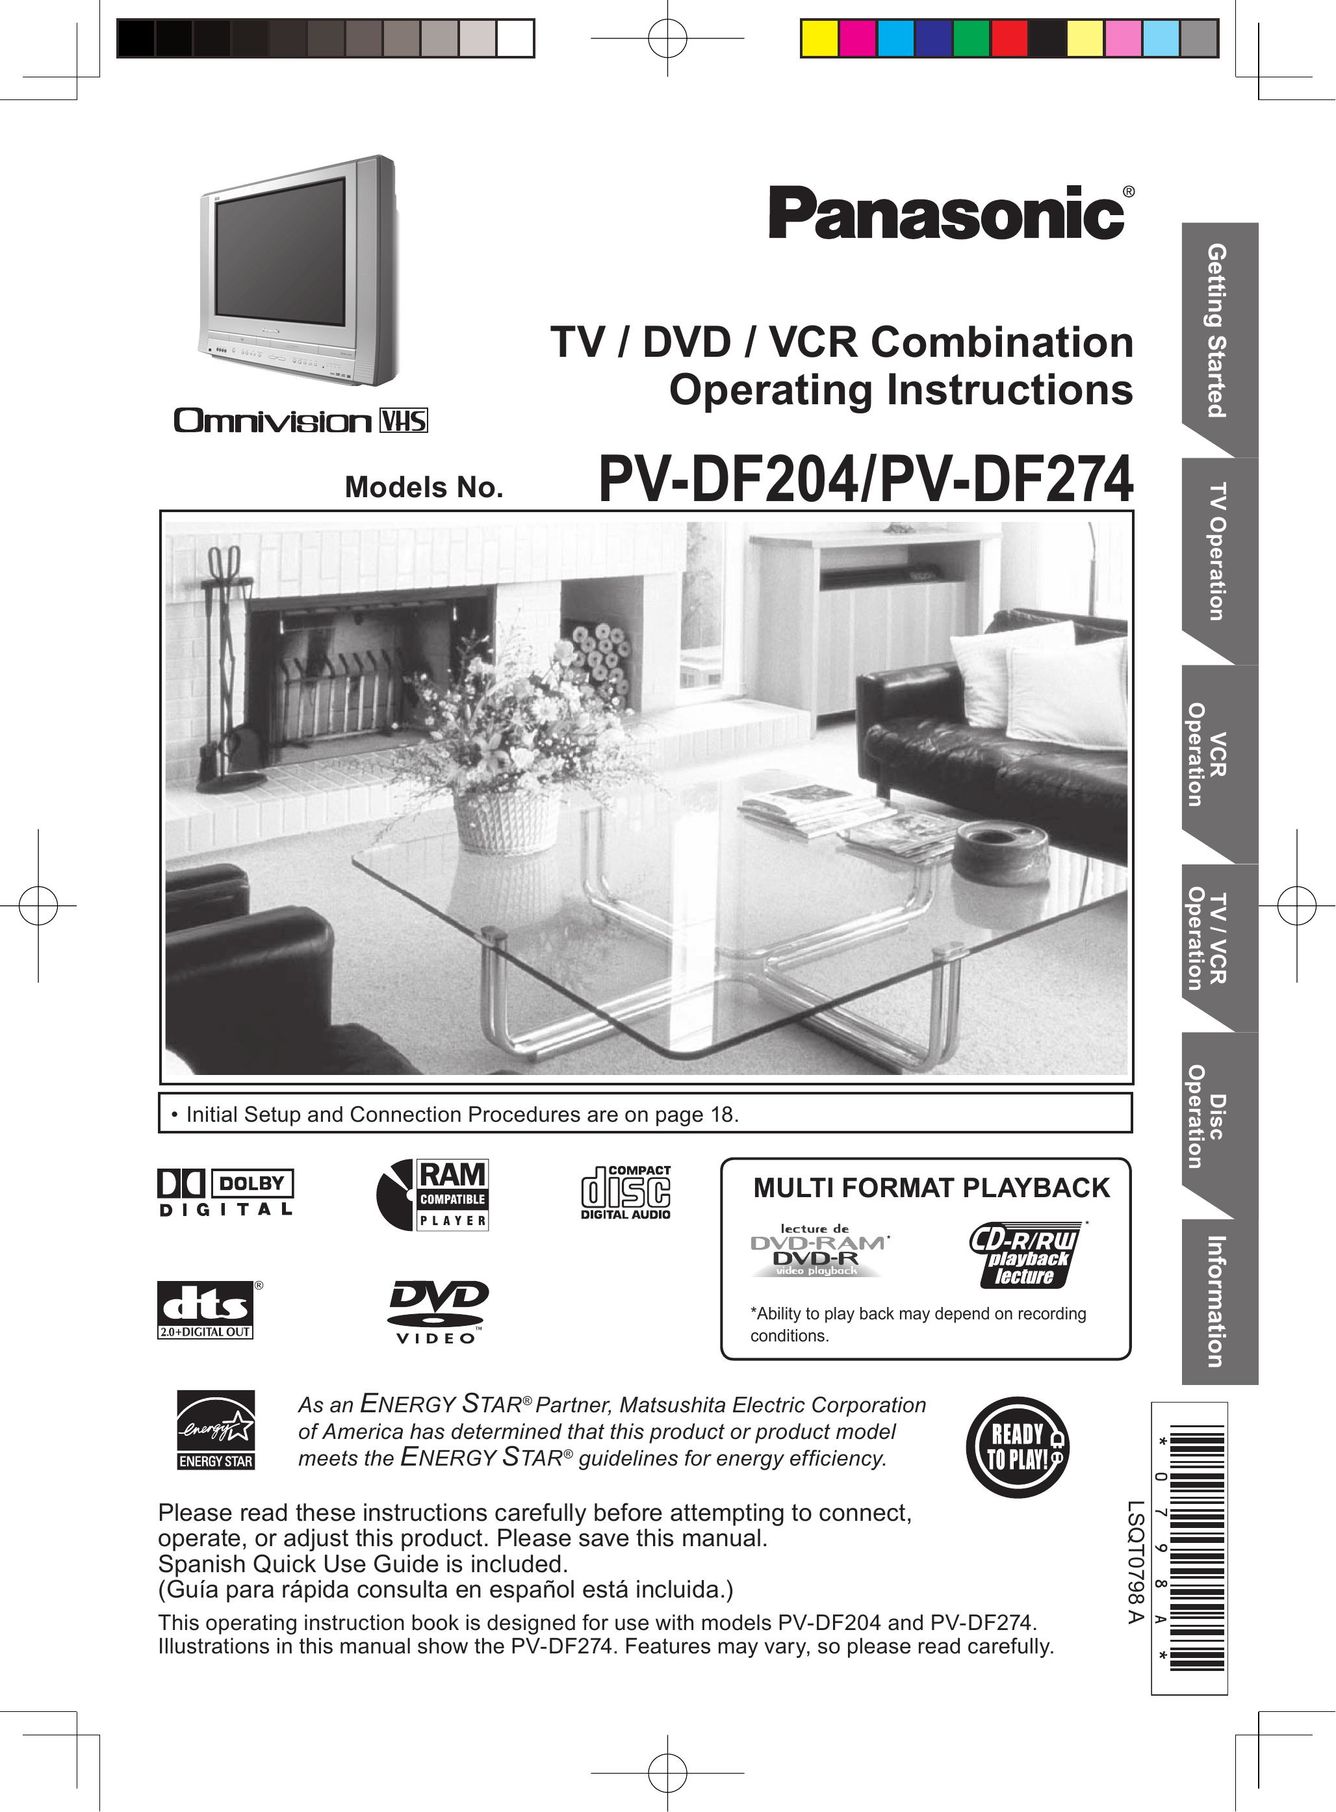 Panasonic PV-DF204 TV VCR Combo User Manual